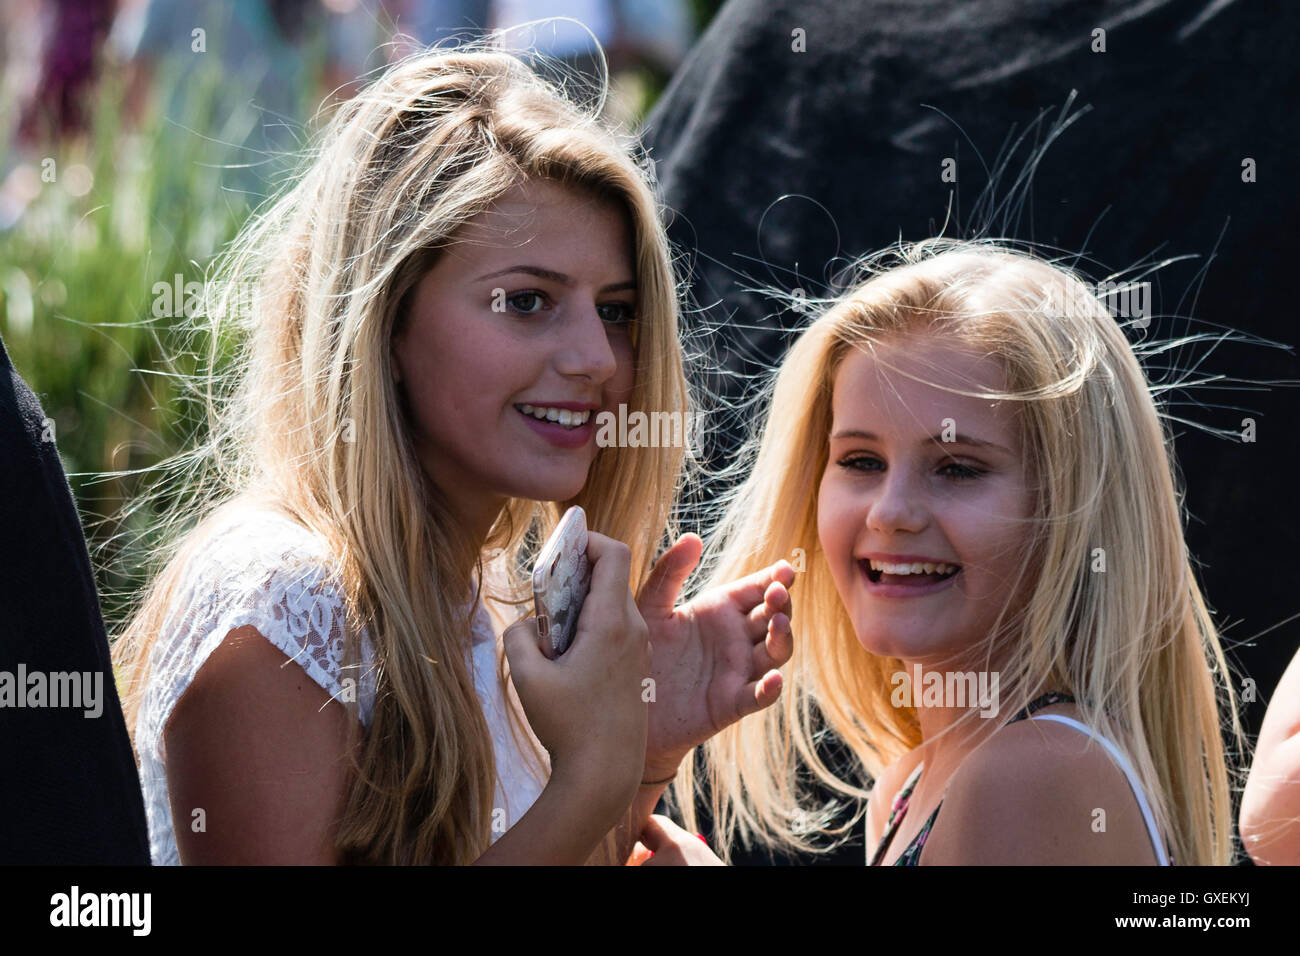 Due bionde ragazze adolescenti, 13-14 anni, sia girato le loro teste a faccia mentre ridono, cattura la luce del sole i loro capelli. Colpo alla testa. Nessun contatto visivo. Foto Stock